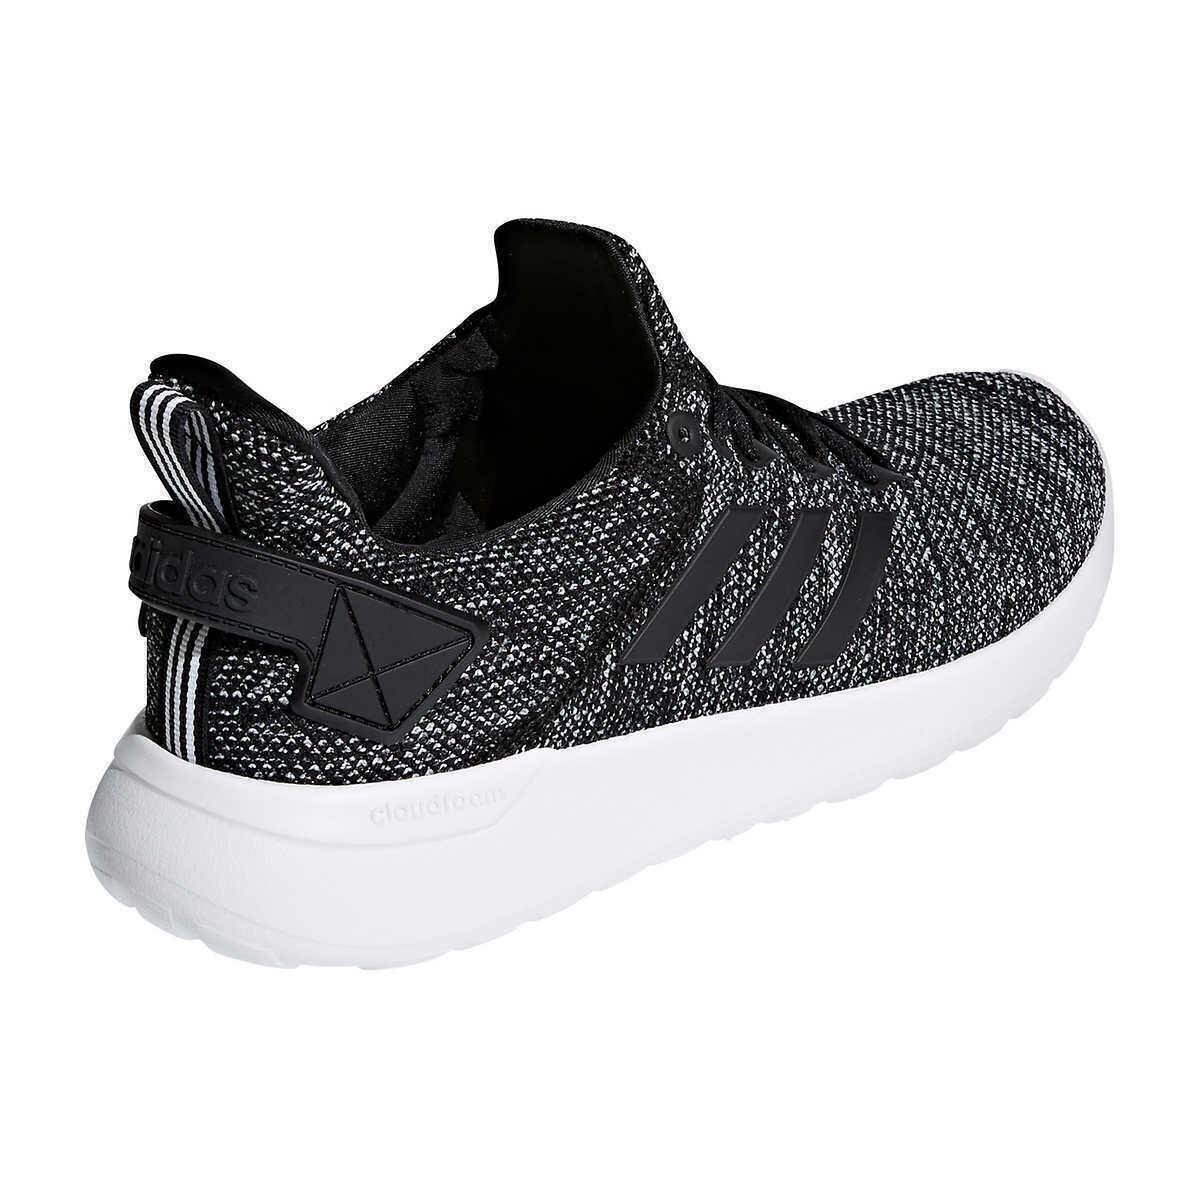 Adidas shoes Cloudfoam Lite Racer - Black 0